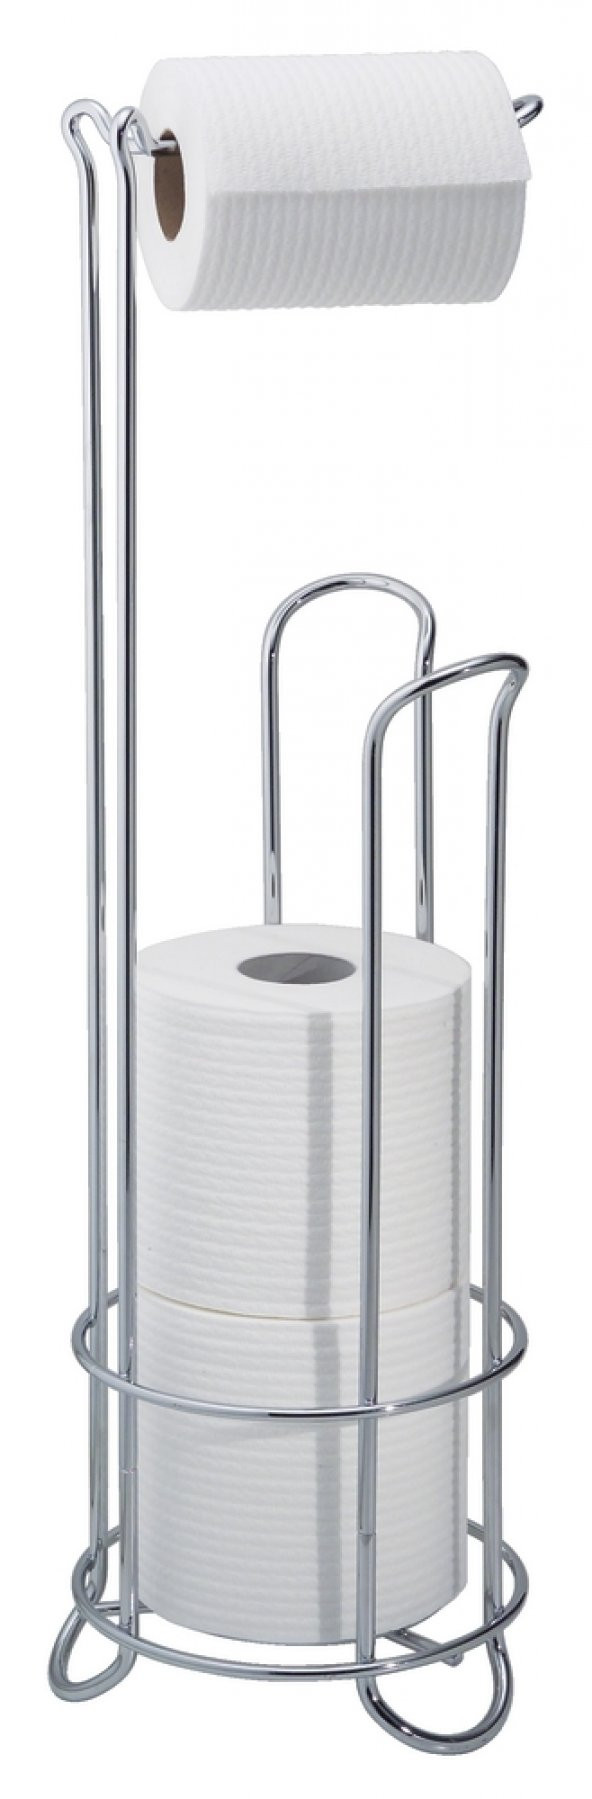 Tuvalet kağıdı standı yedeklikli Krom kaplamalı paslanmaz çelik 1